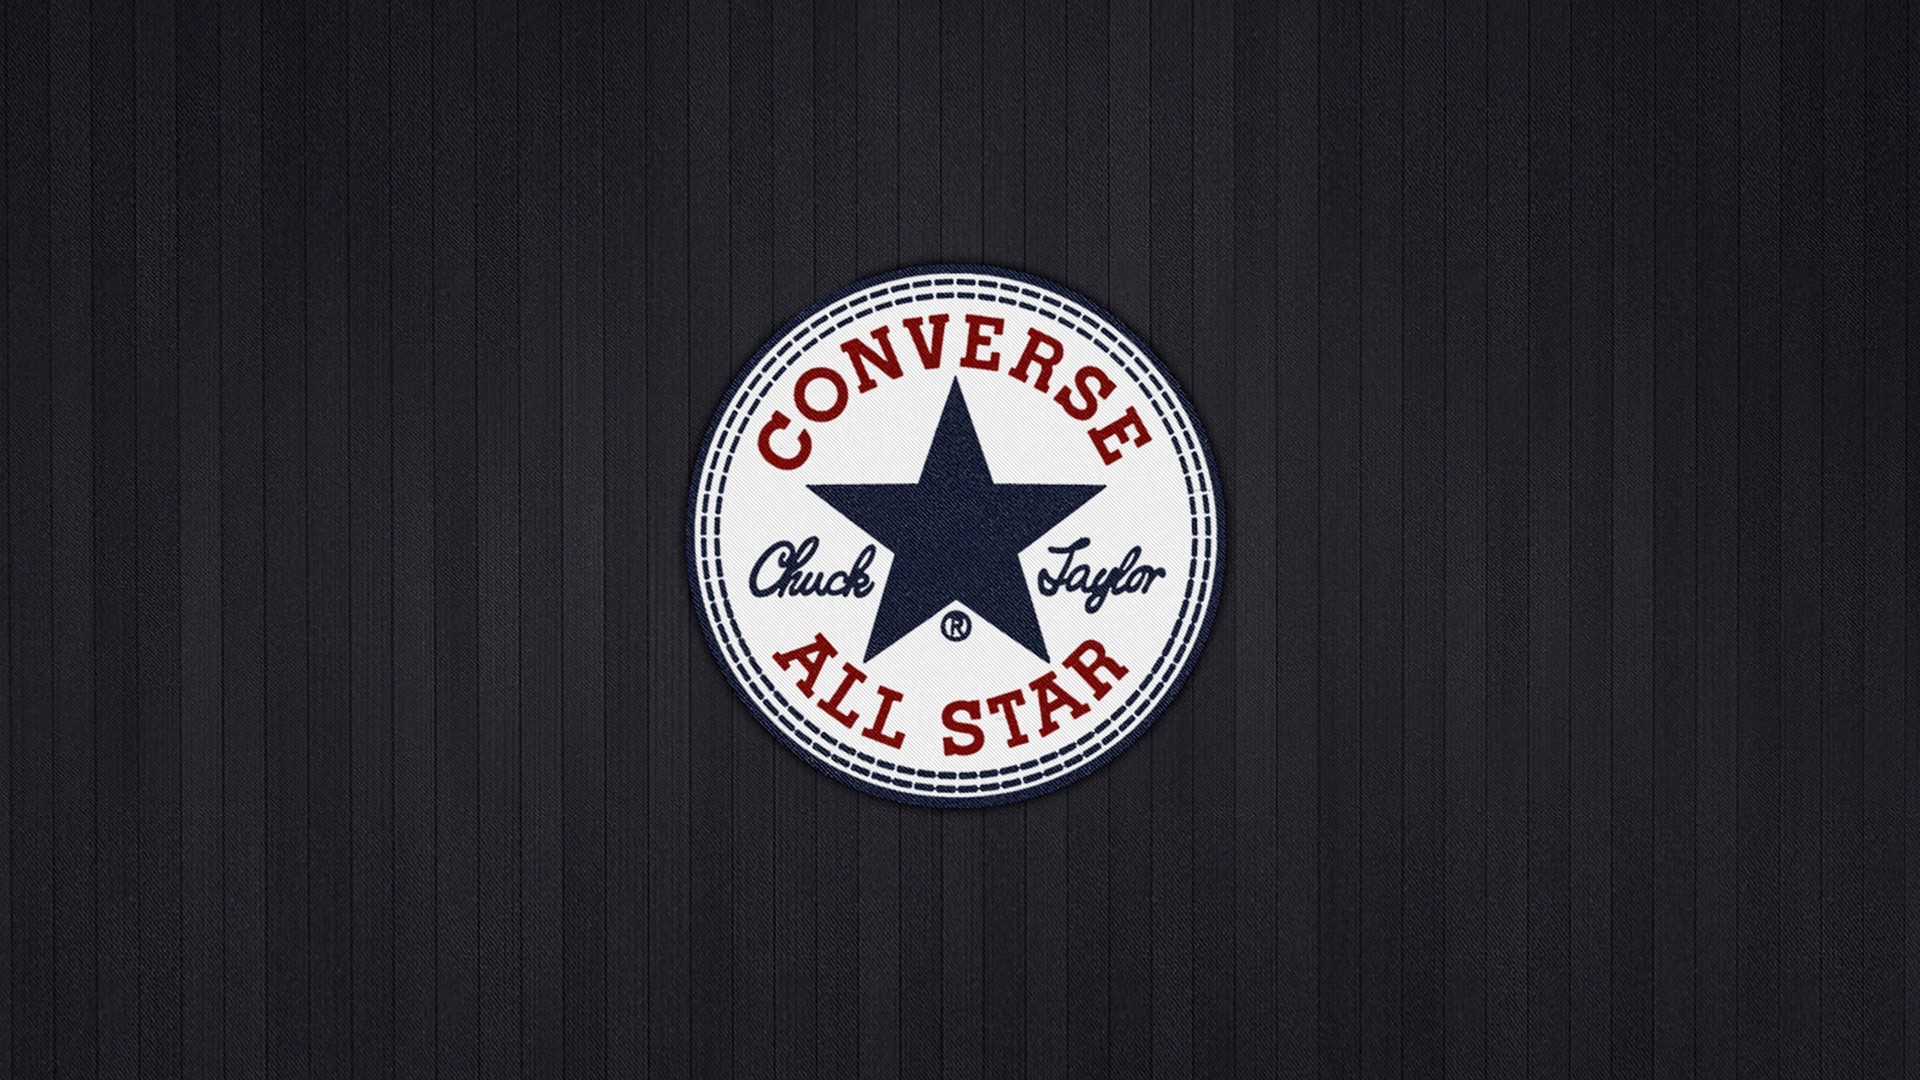 Converse All Star Wallpaper for Desktop 1920x1080